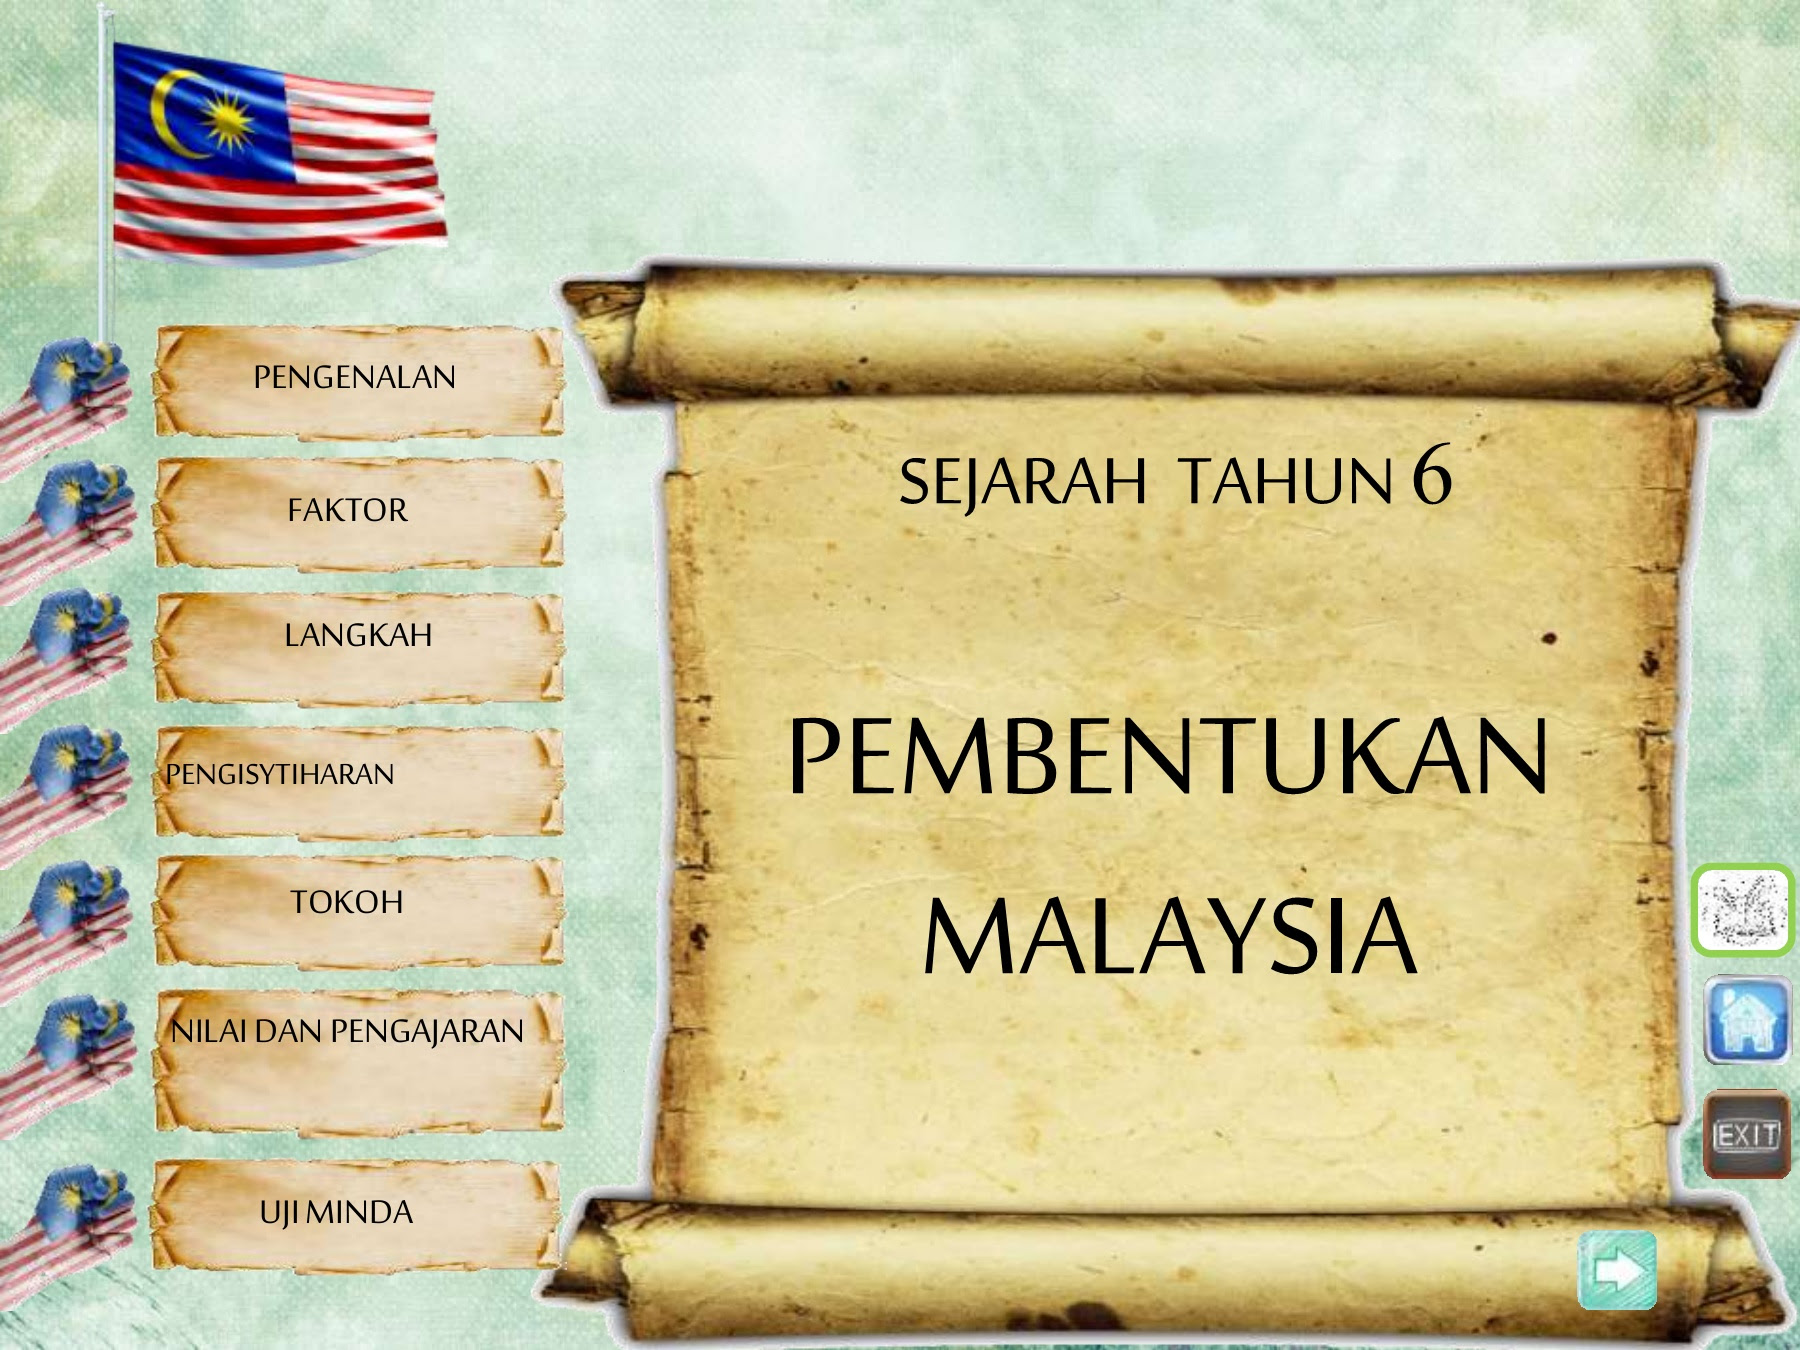 Tokoh Tokoh Pembentukan Malaysia